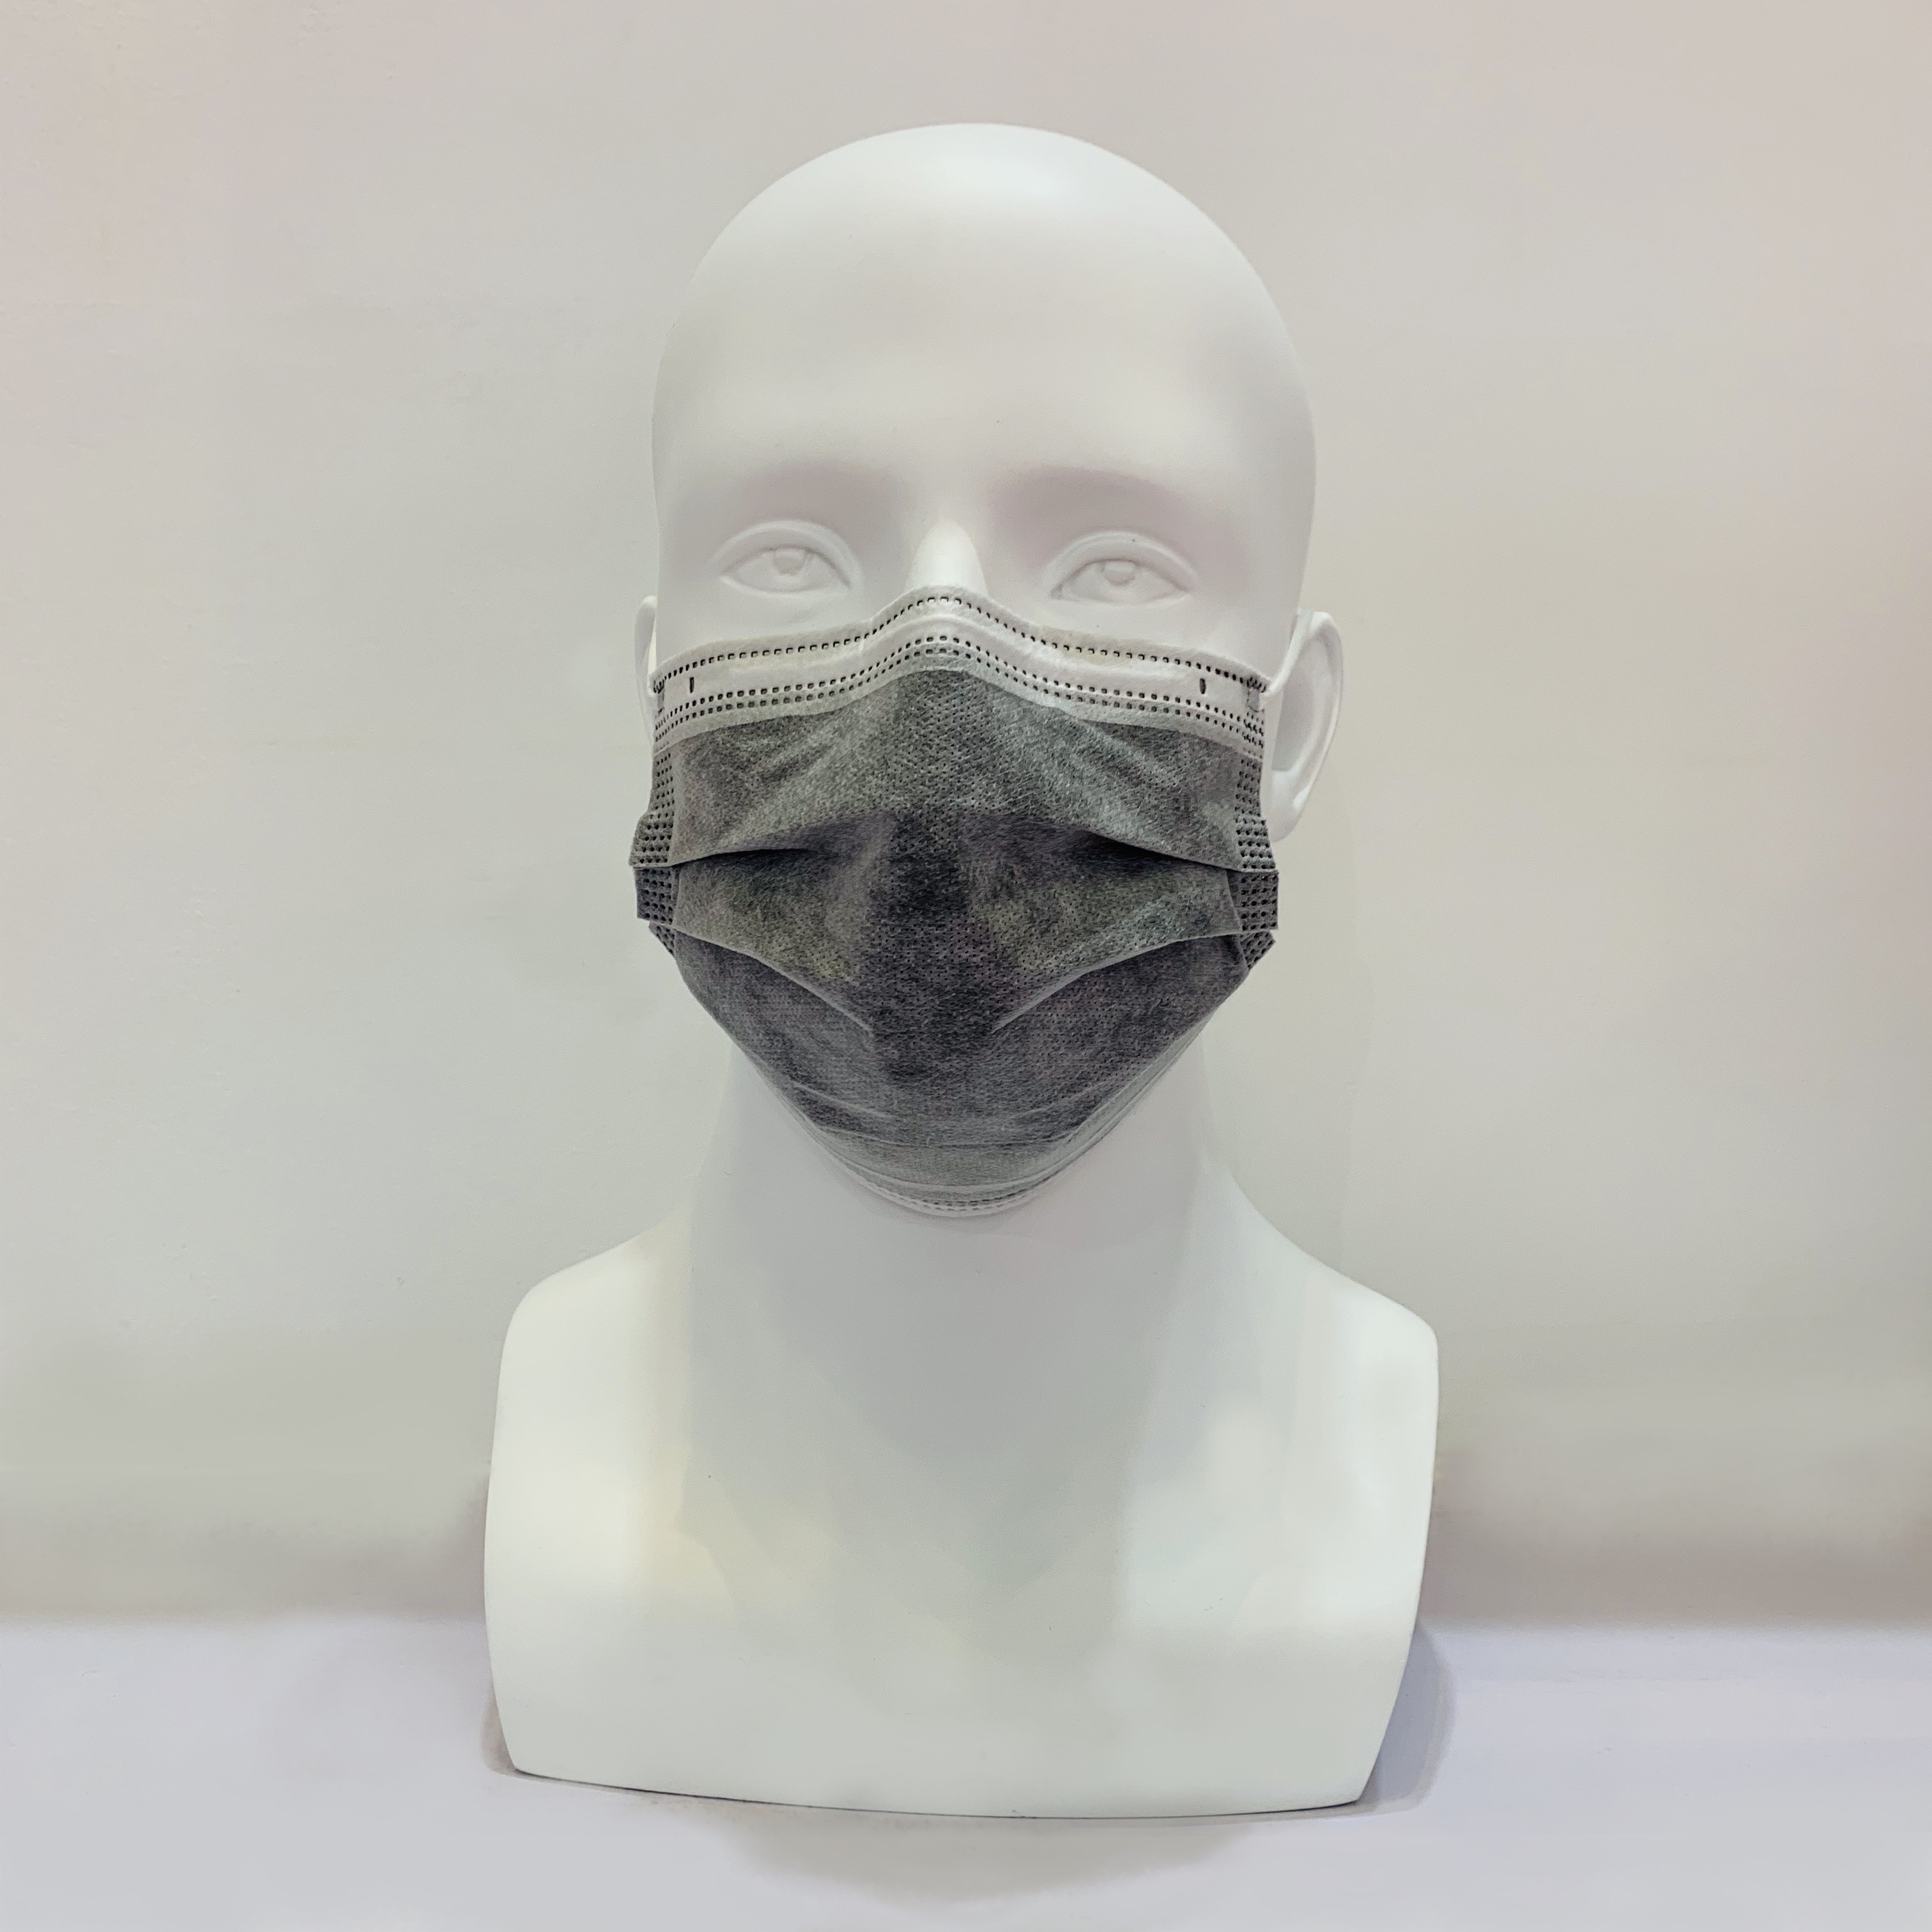 Mascarilla de filtro de carbón activado anti polvo desechable PM 2.5 de color gris
